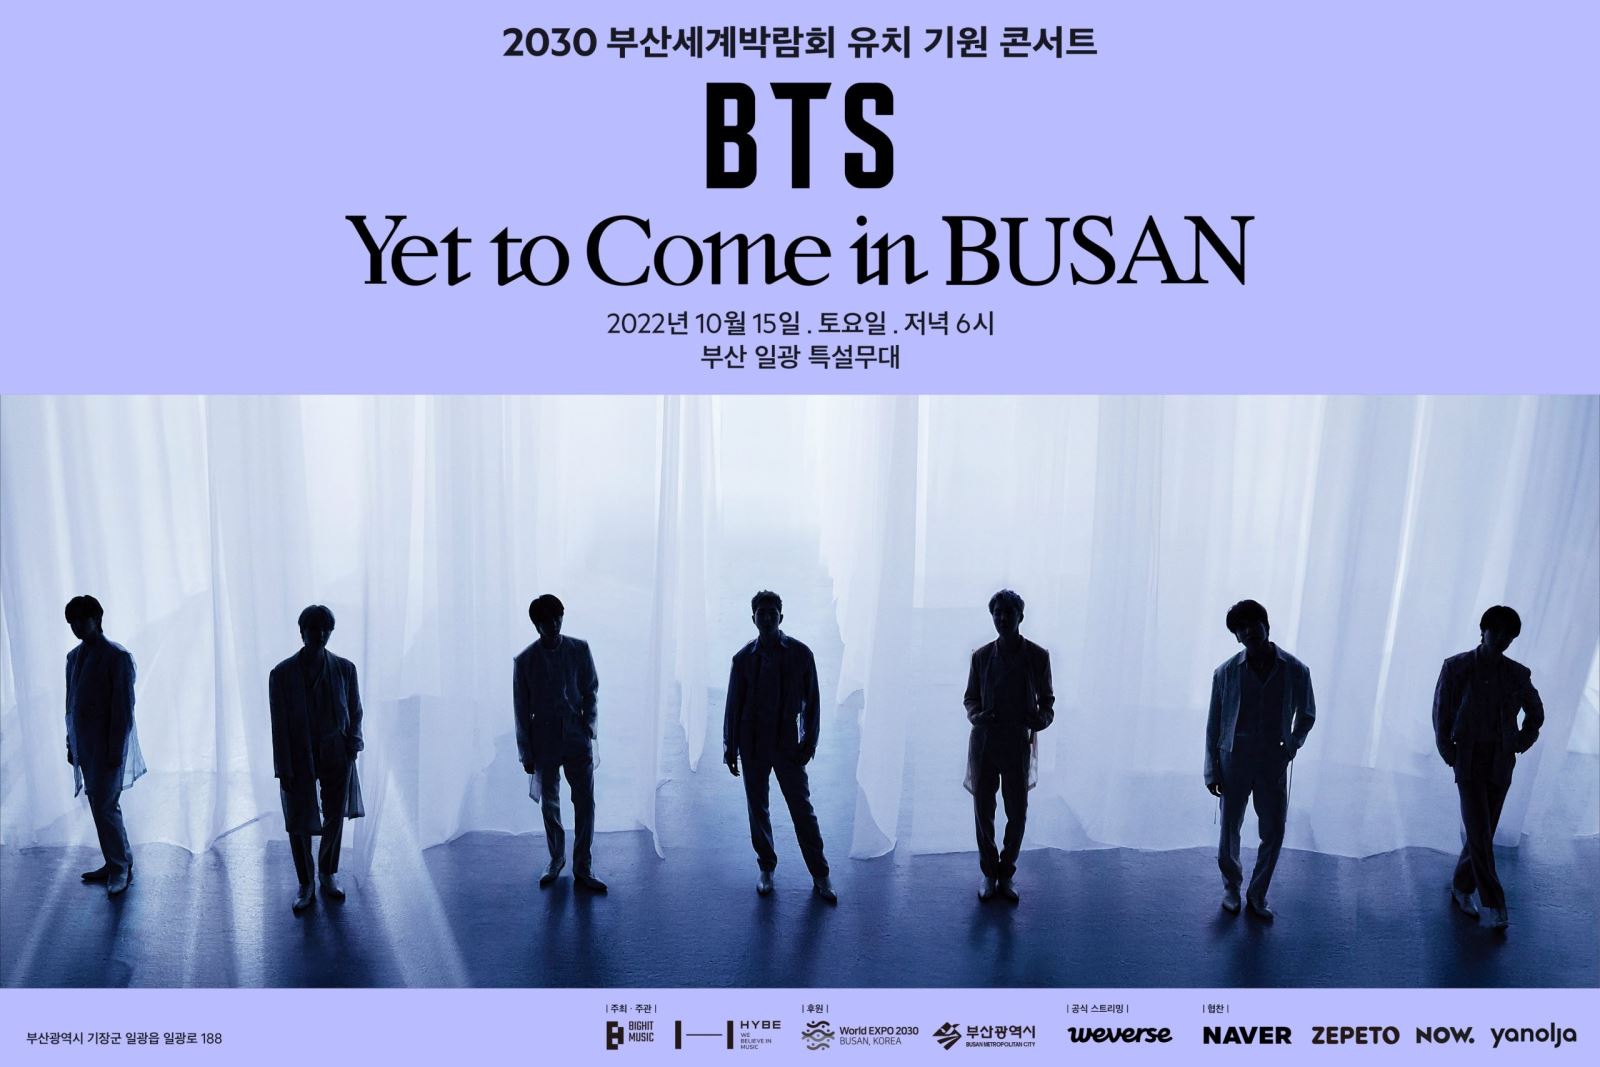 BTS, BTS ảnh thẻ hòa nhạc Busan, BTS Busan merch, BTS hàng hóa Busan, Yet To Come Busan, Jungkook, Jimin, Jin, J-Hope, RM, Suga, V BTS, BTS new merch, BTS photocard